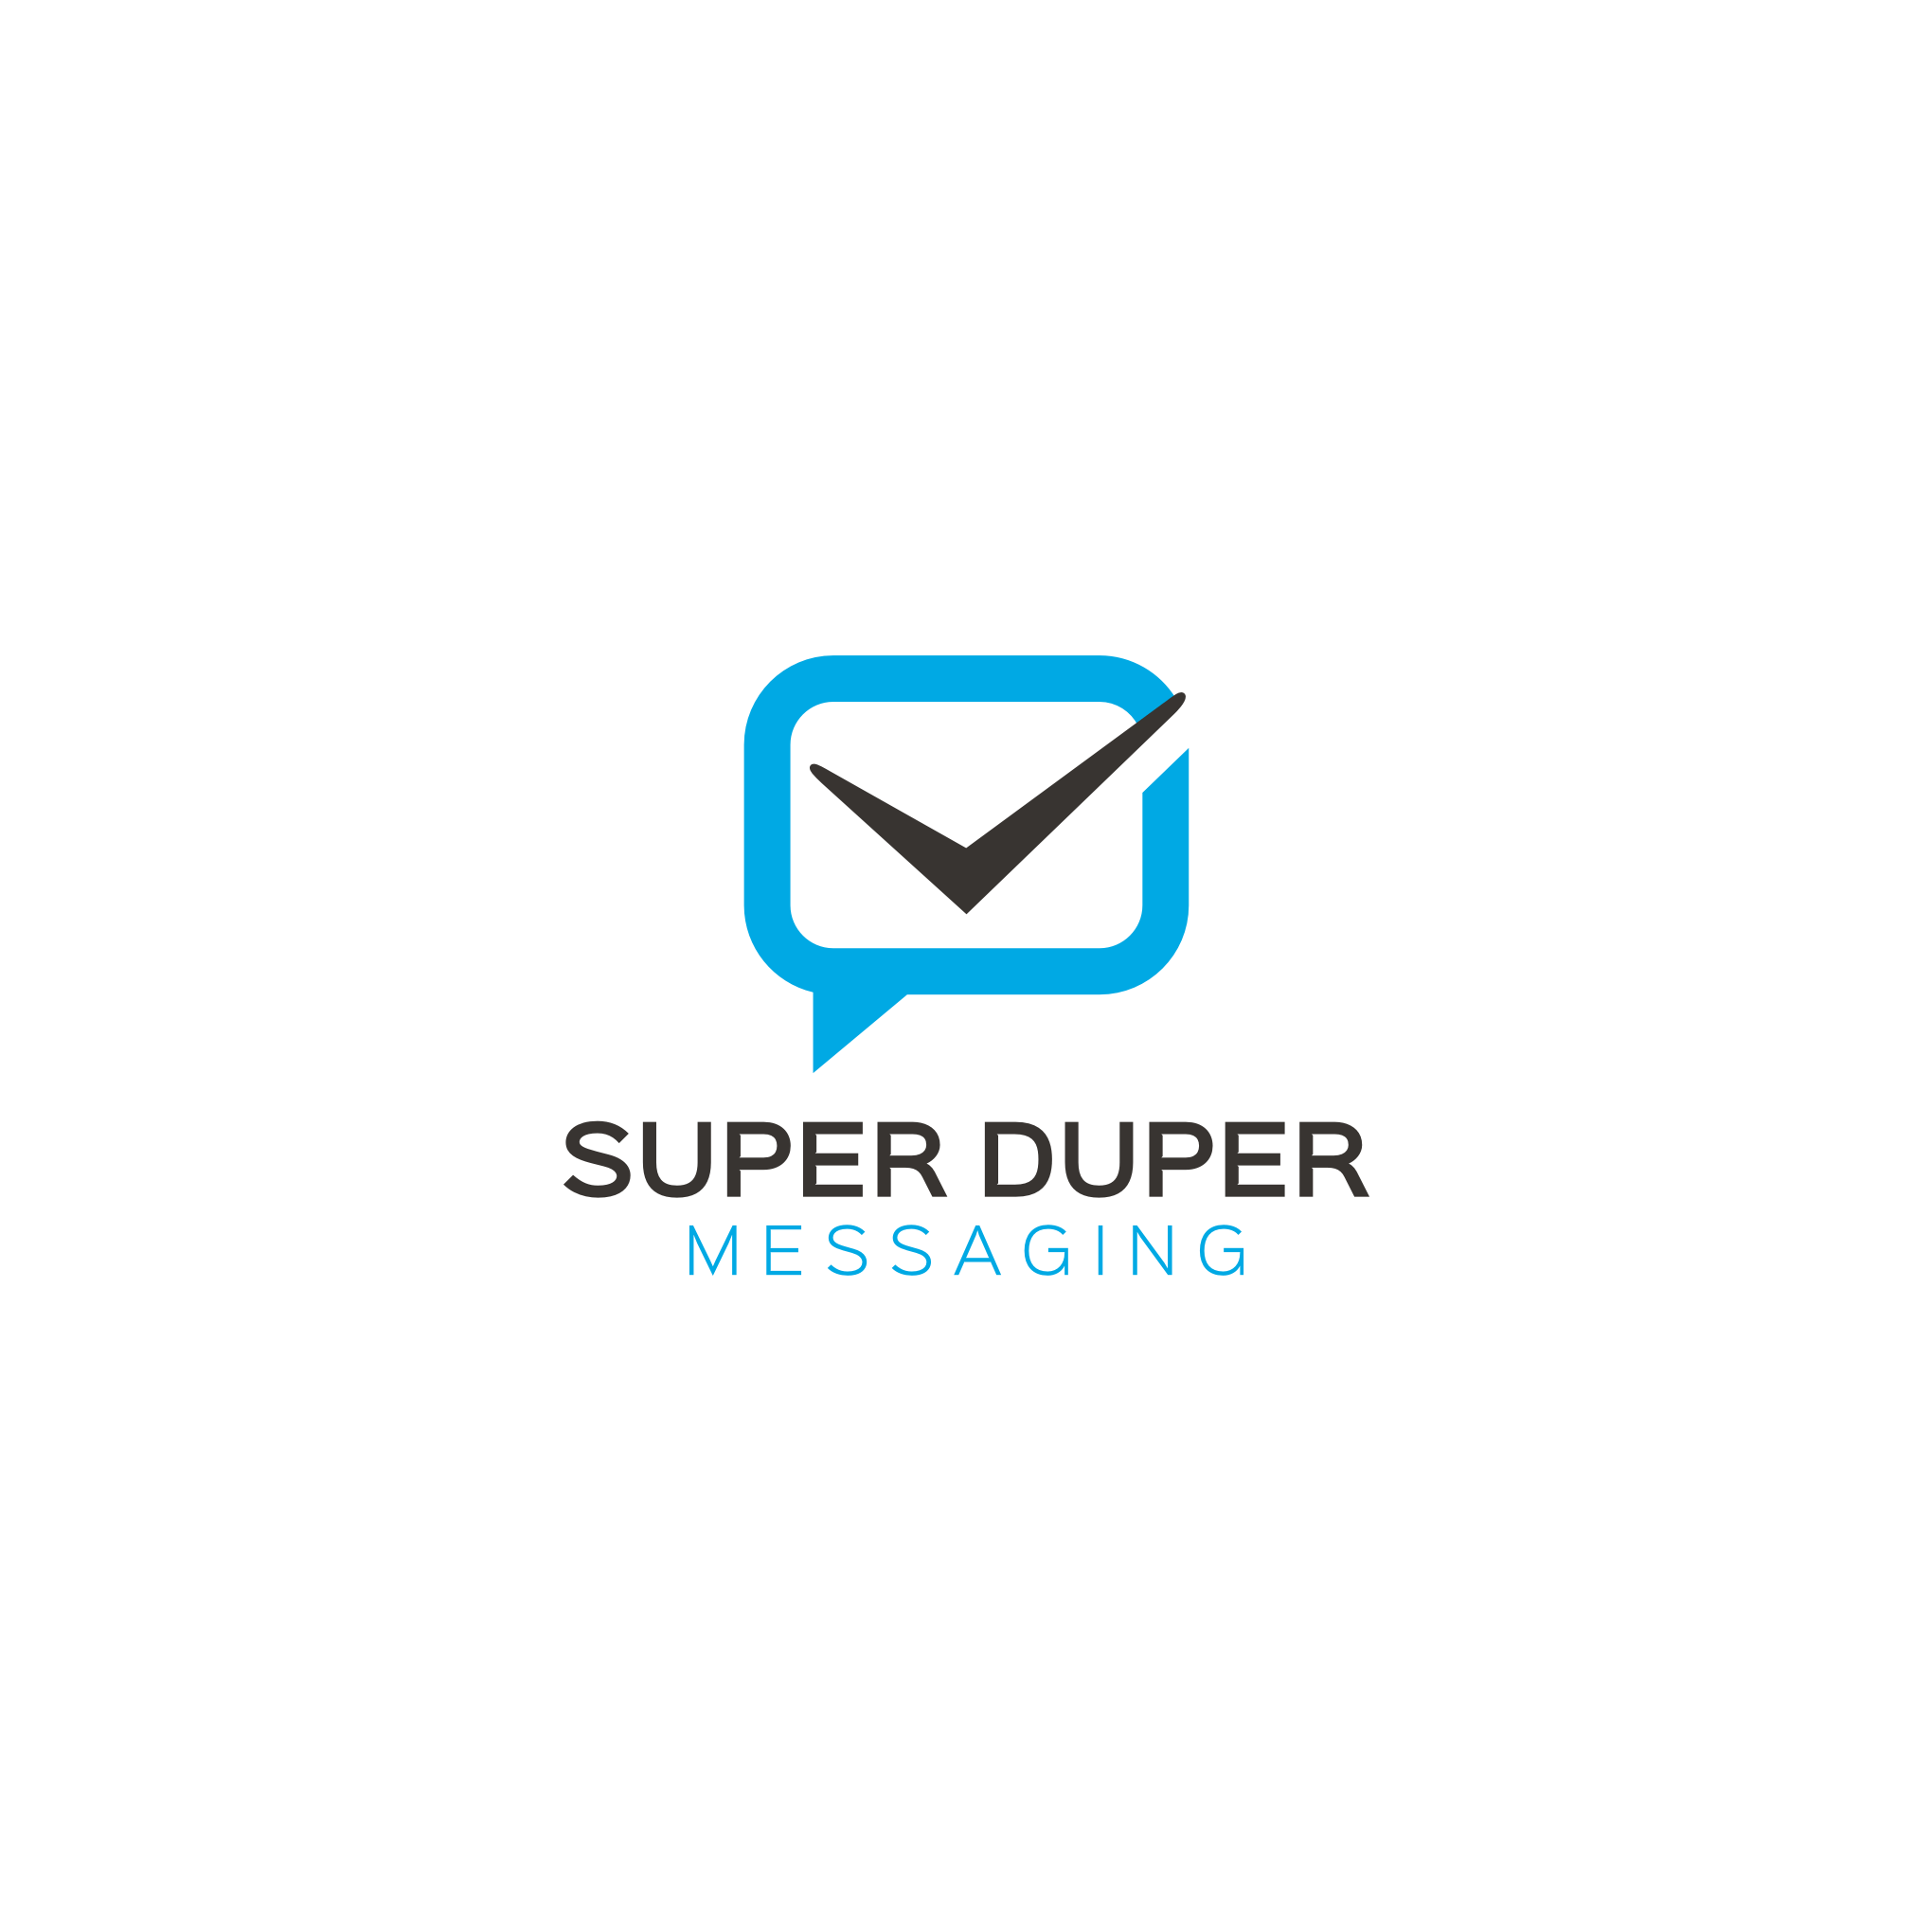 Messaging Logo - Logo Design #106 | 'Super Duper Messaging' design project ...